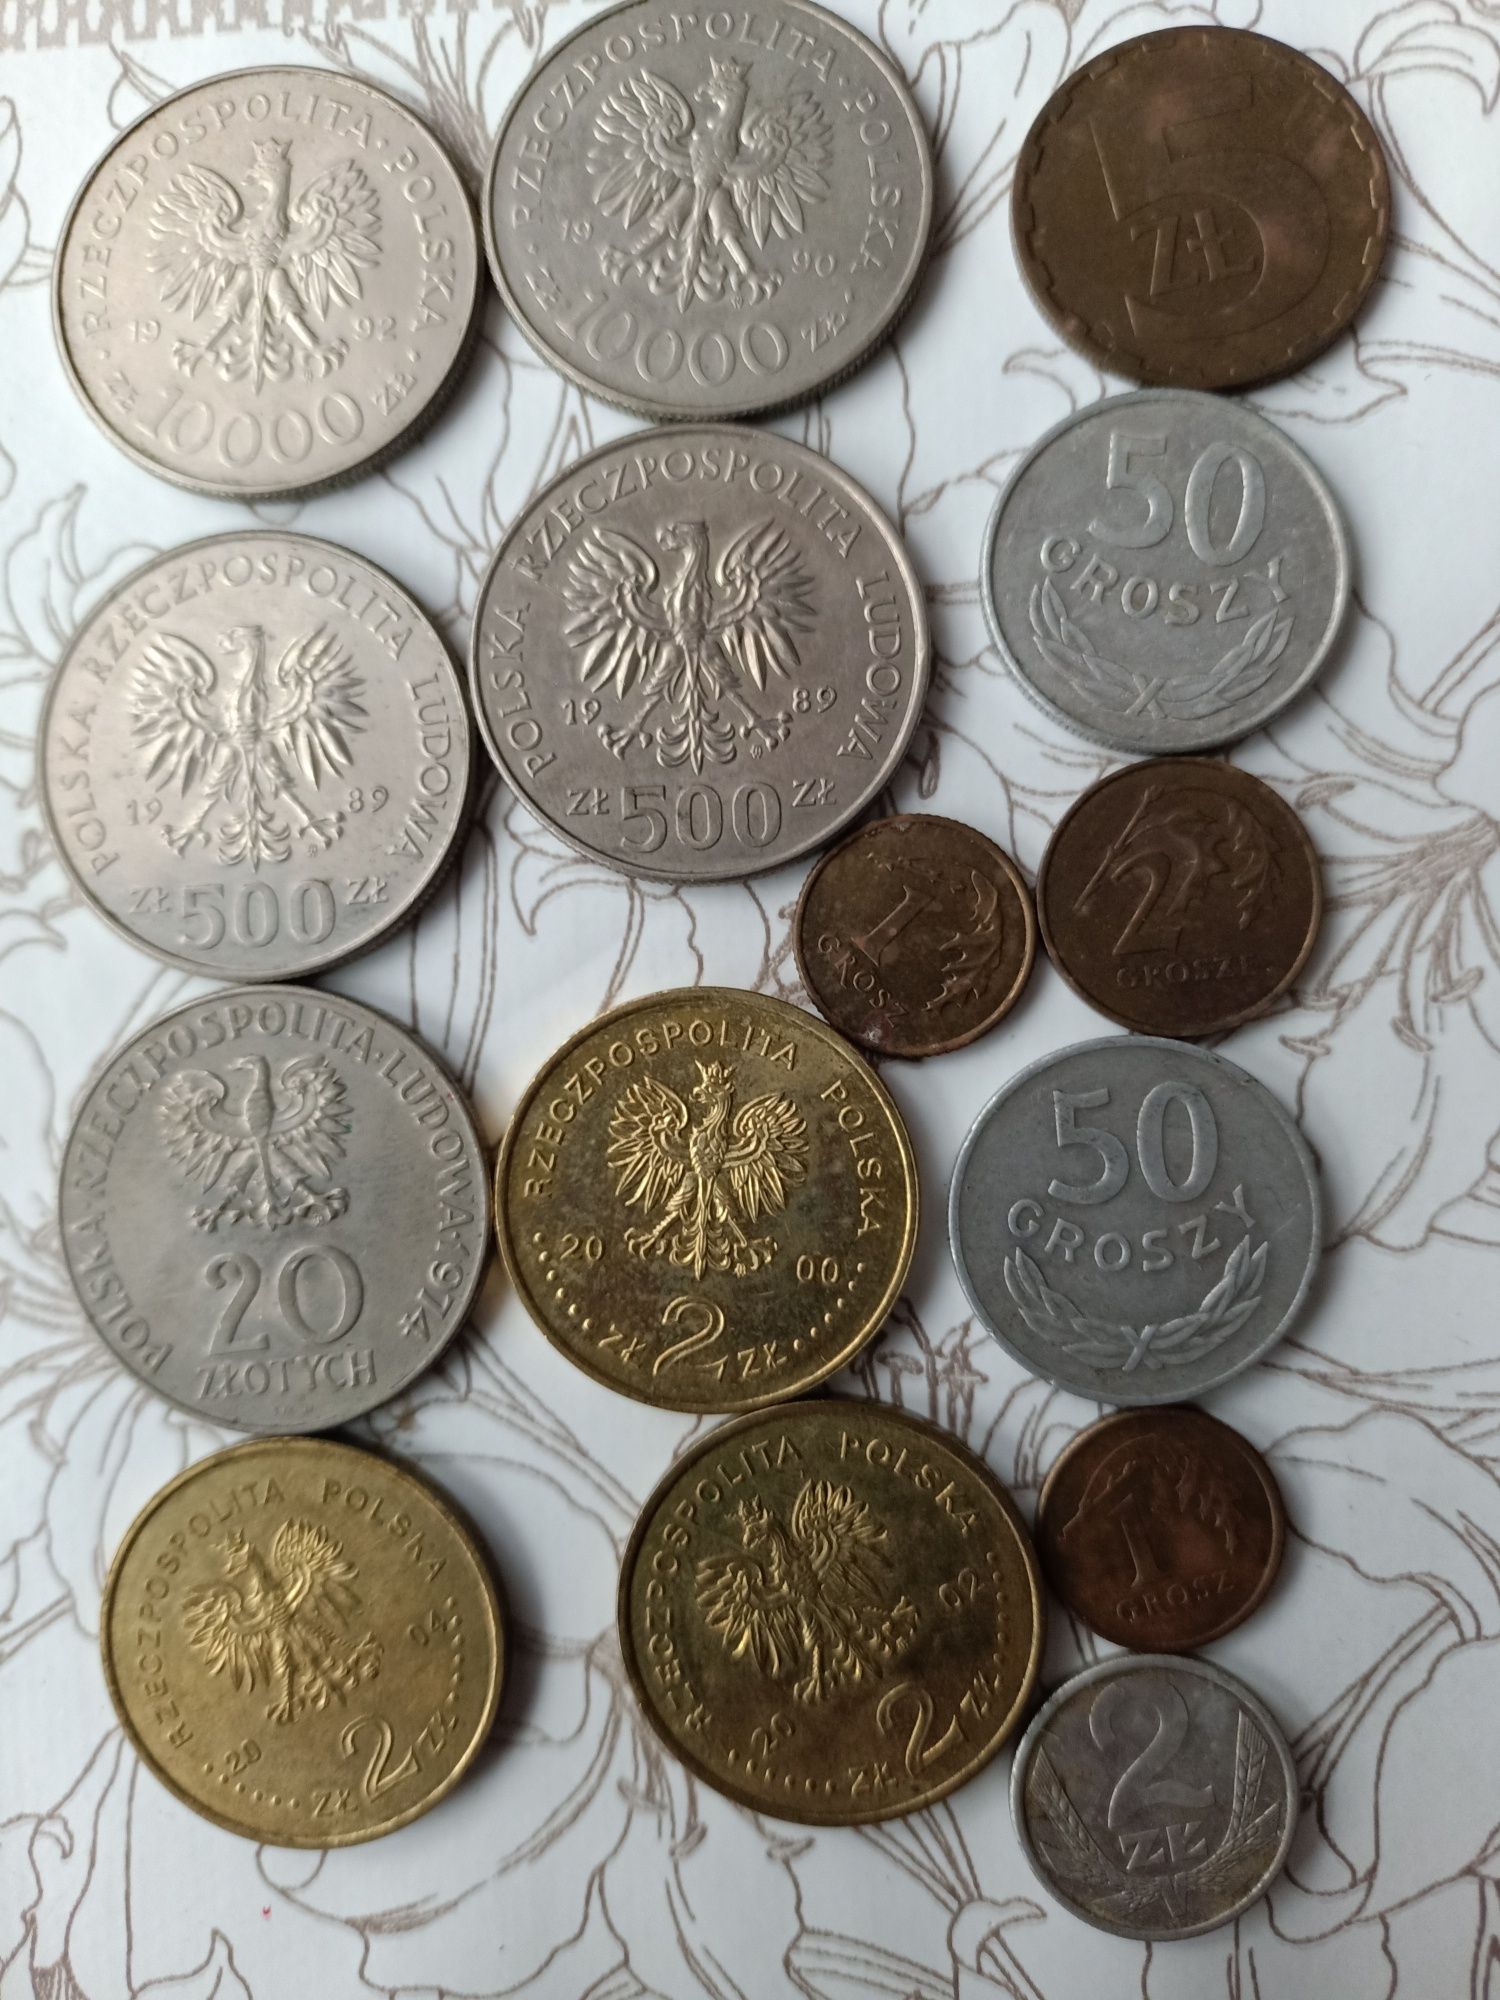 Stare monety polskie i zagraniczne oraz banknoty z Ukrainy